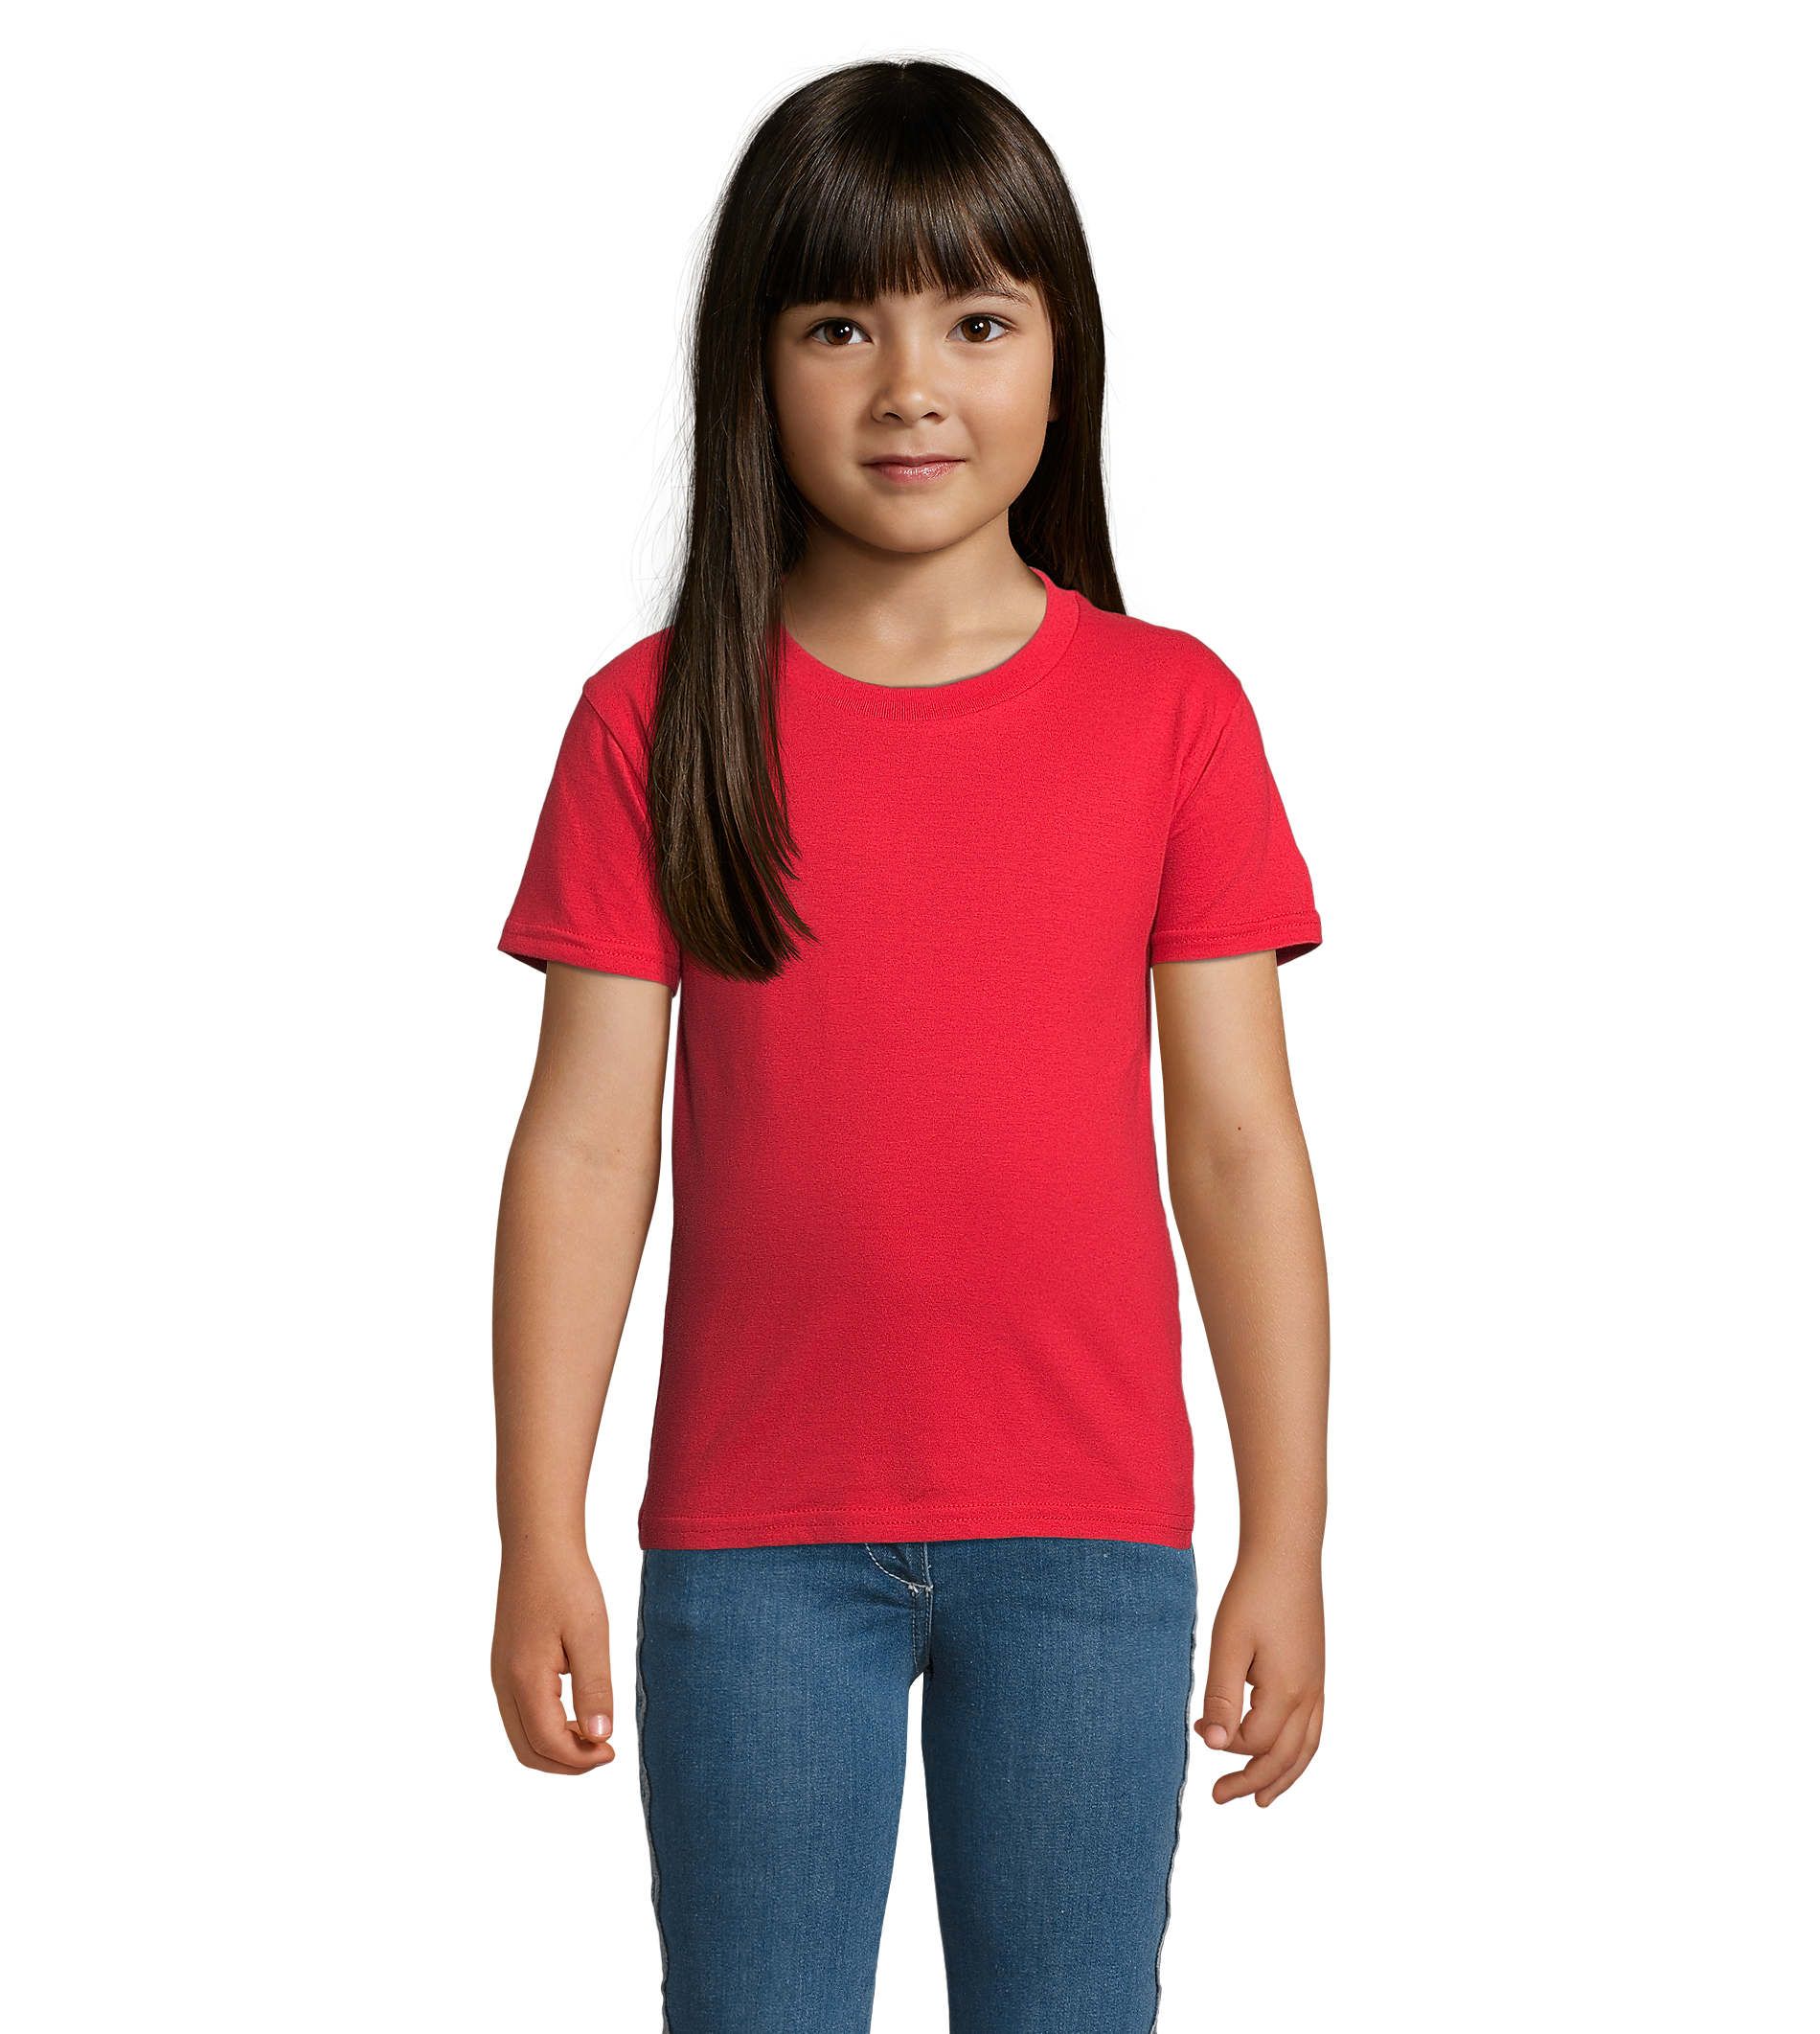 Camiseta Azul Clásica para Niños - Comodidad y Durabilidad